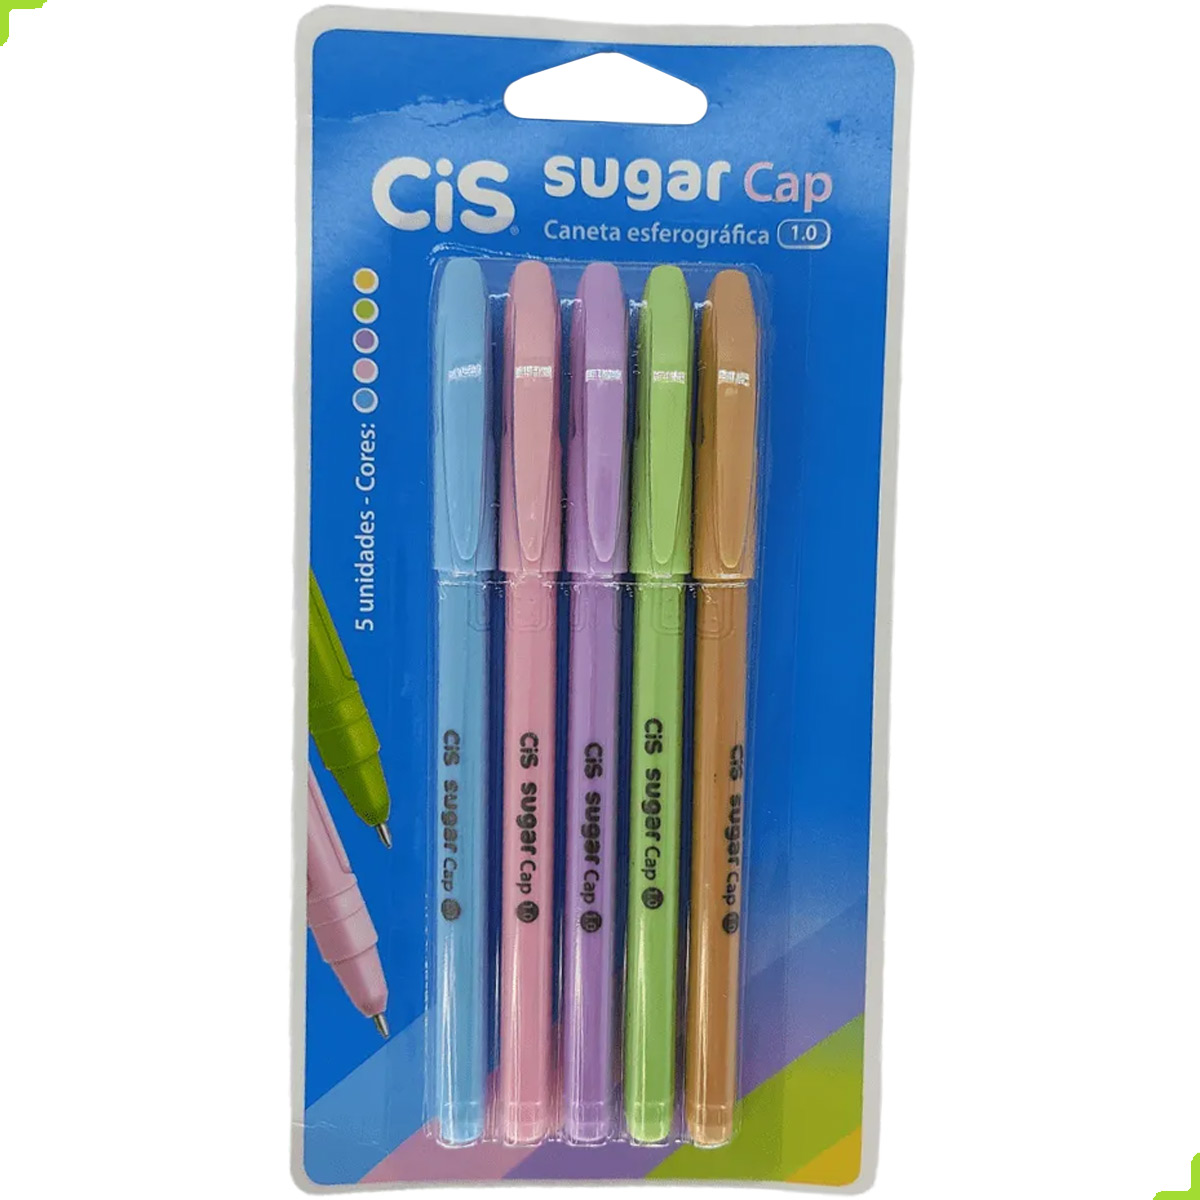 Caneta Sugar Cap - Cis